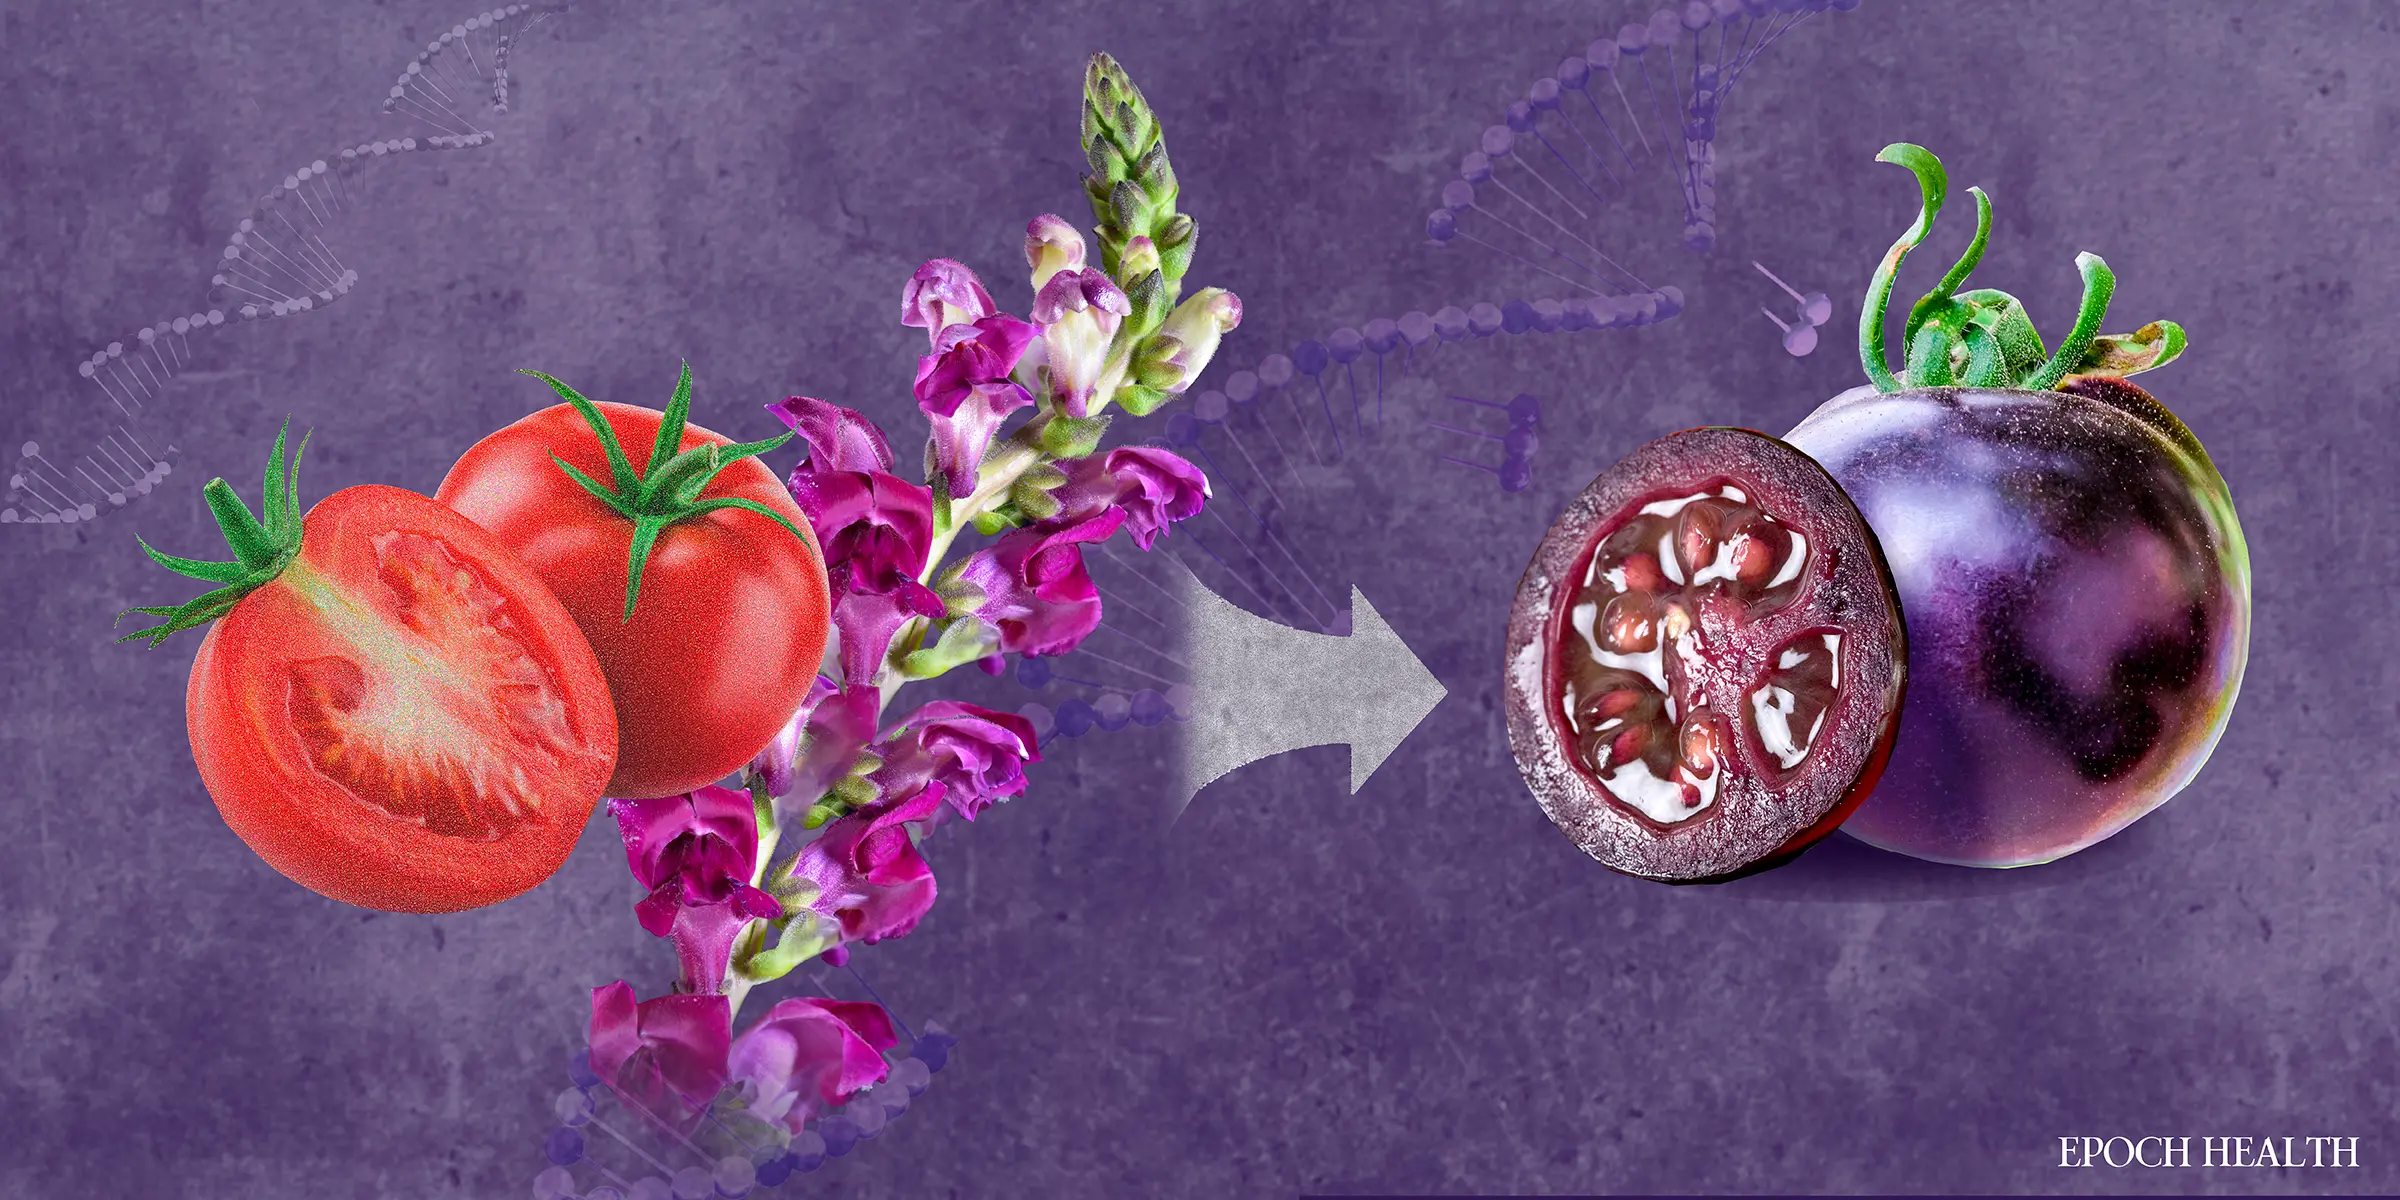 Công ty Norfolk Plant Sciences đã tạo ra cà chua tím bằng cách ghép gen từ mõm chó tím vào cà chua. (Ảnh minh họa của The Epoch Times, Shutterstock, Getty Images)